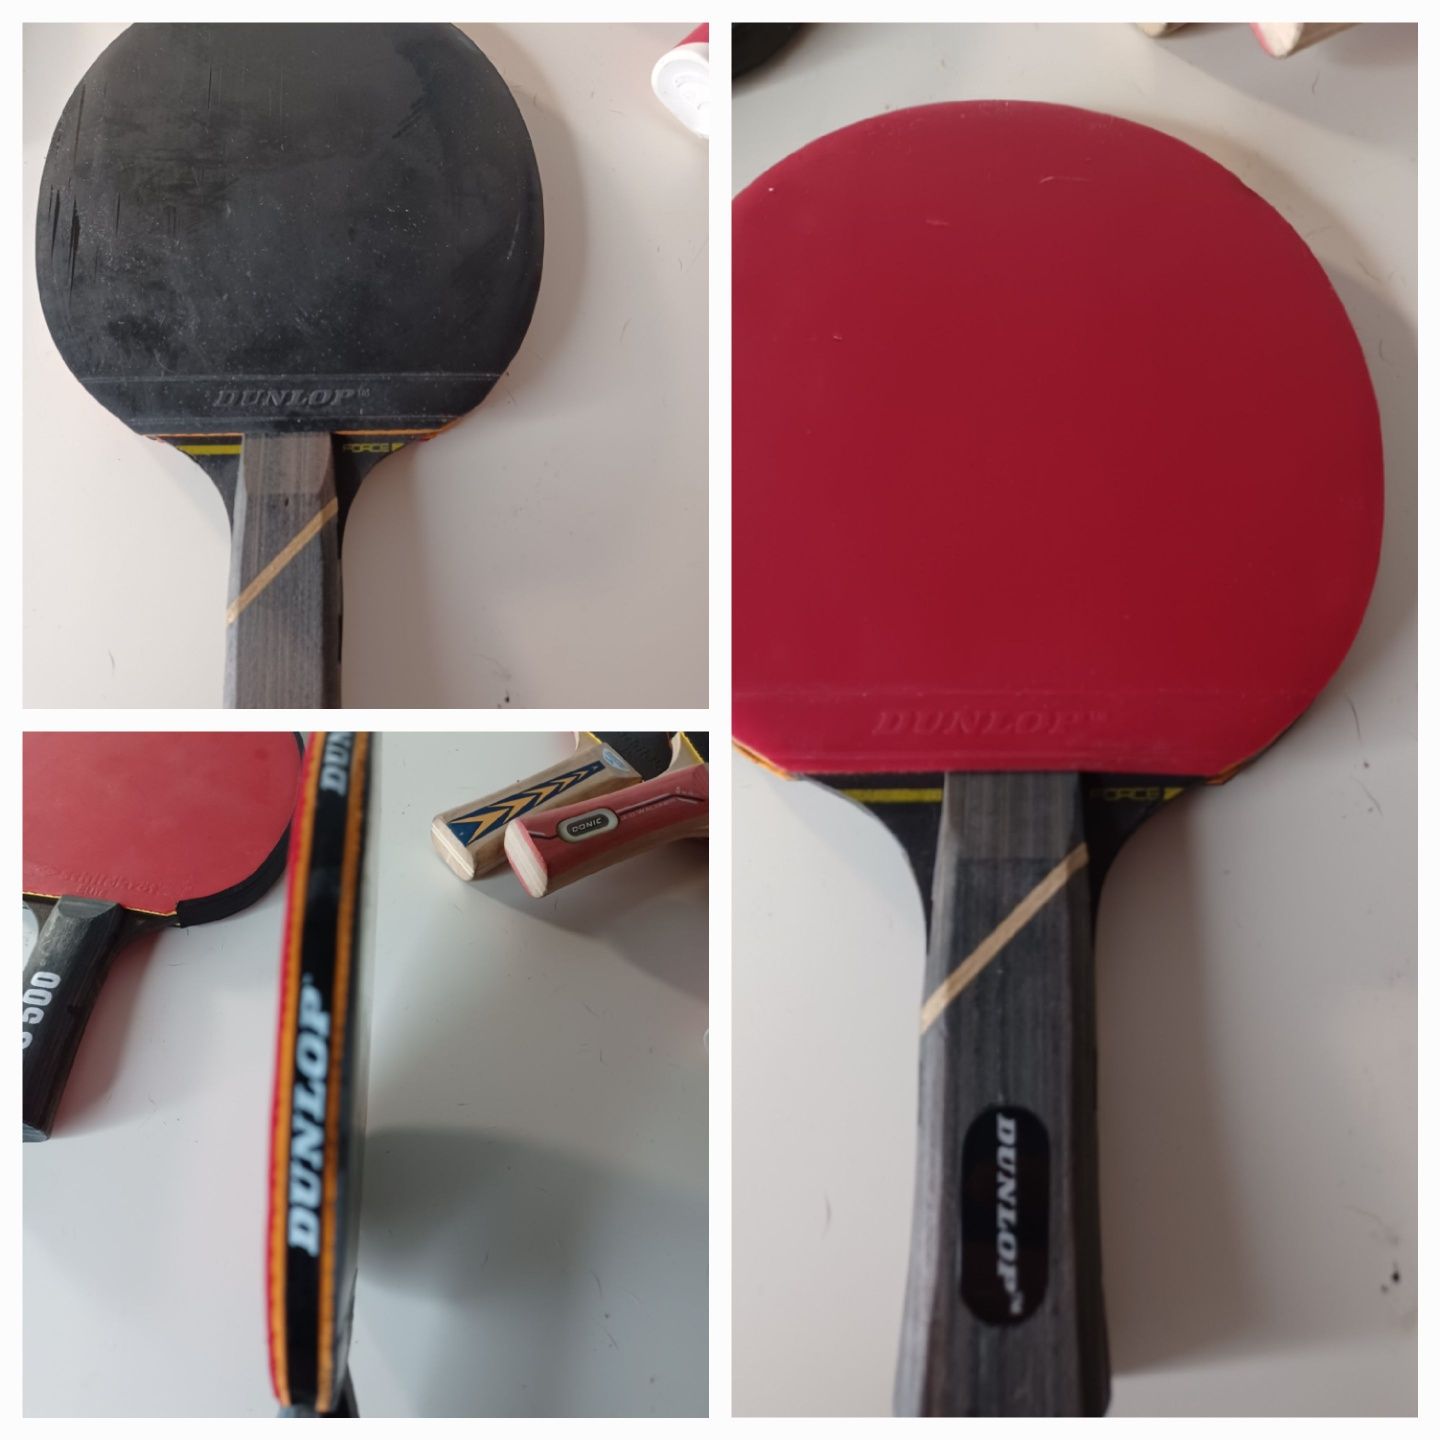 Тенис на маса хилки ракети хилкаDonic Dunlop Tacteo S 500